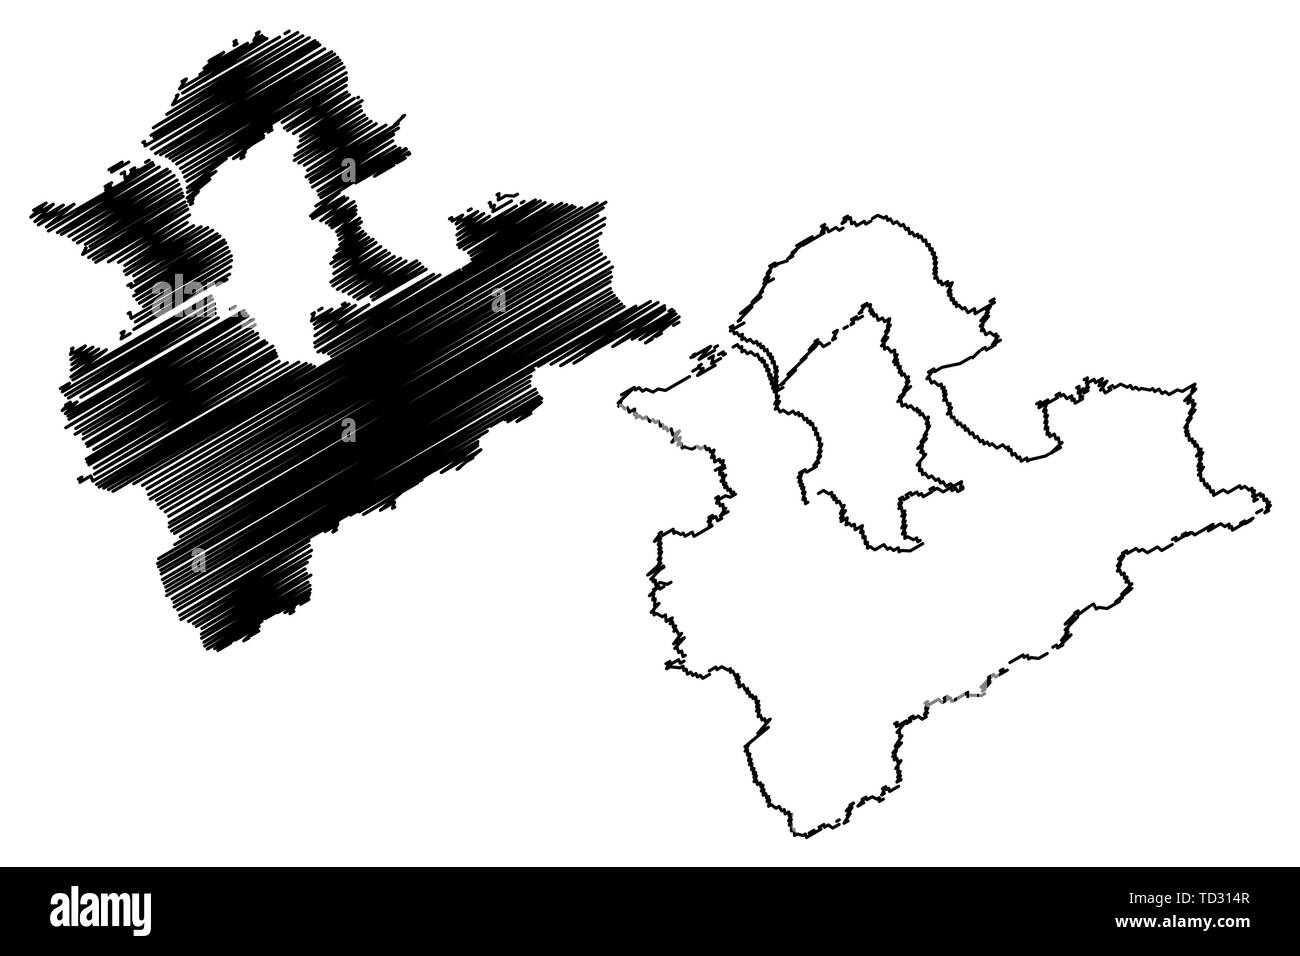 New Taipei City (divisions administratives de Taiwan, République de Chine, ROC, municipalités spéciales) map vector illustration gribouillage, croquis C Taipei Illustration de Vecteur